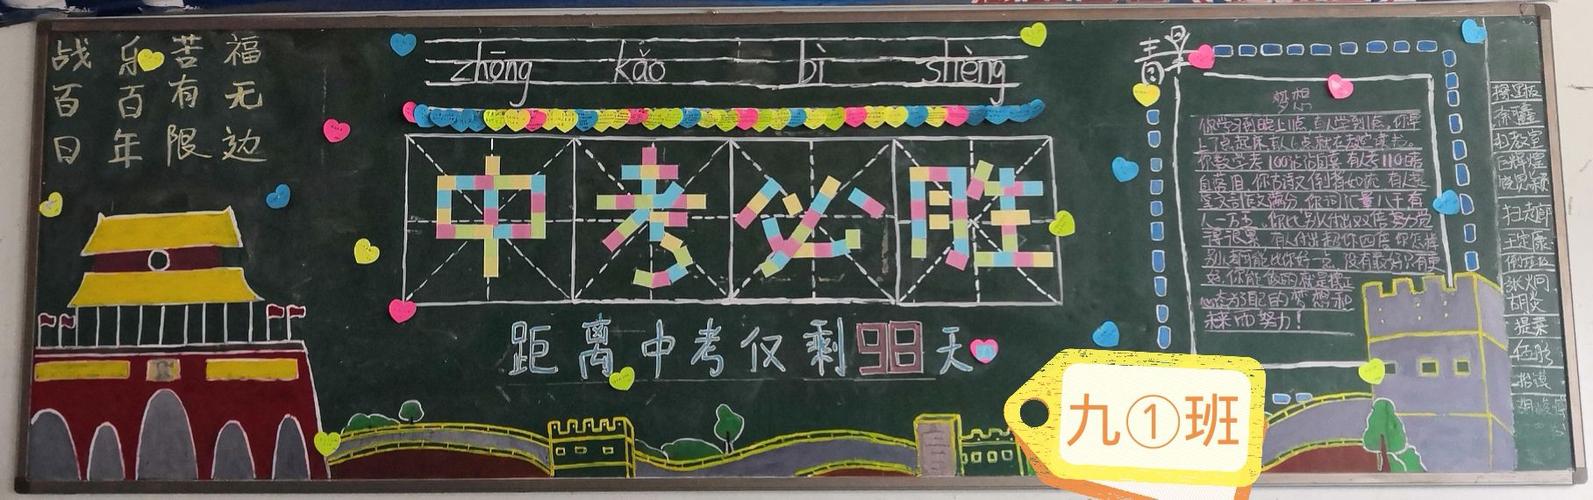 英山县实验中学2019年九年级百日拼搏 笑迎中考黑板报展示